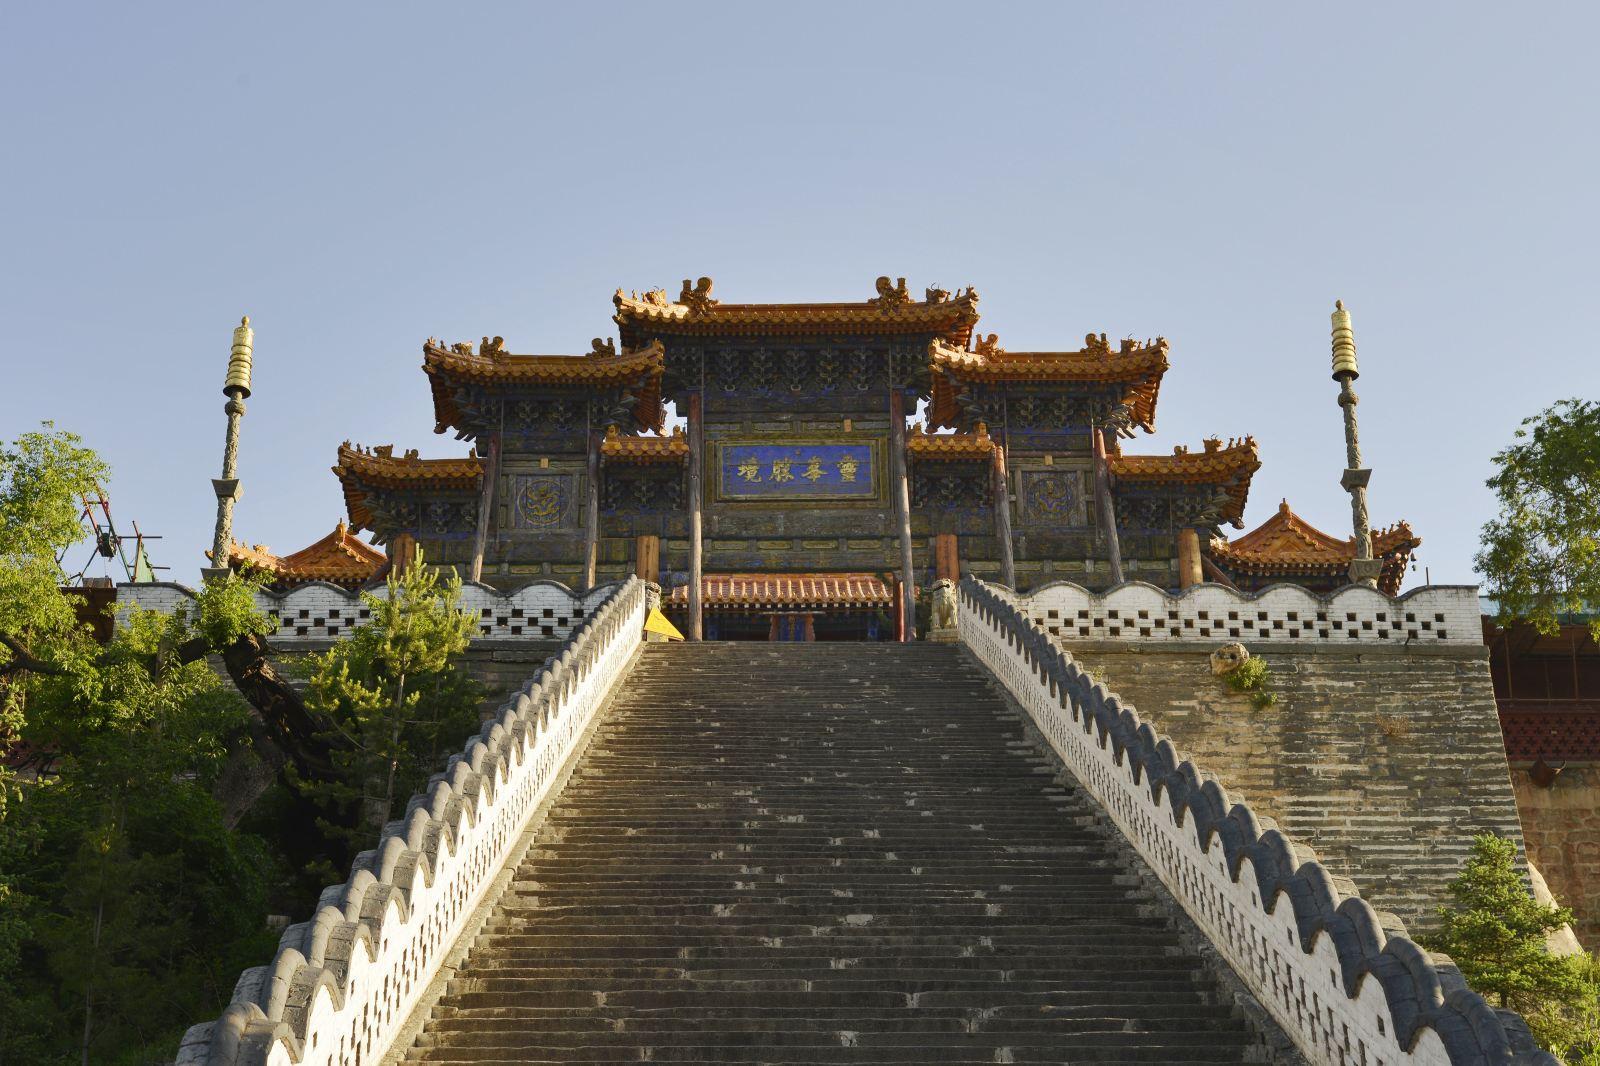 菩萨顶位于台怀镇的灵鹫峰山,也称真容院或大文殊寺